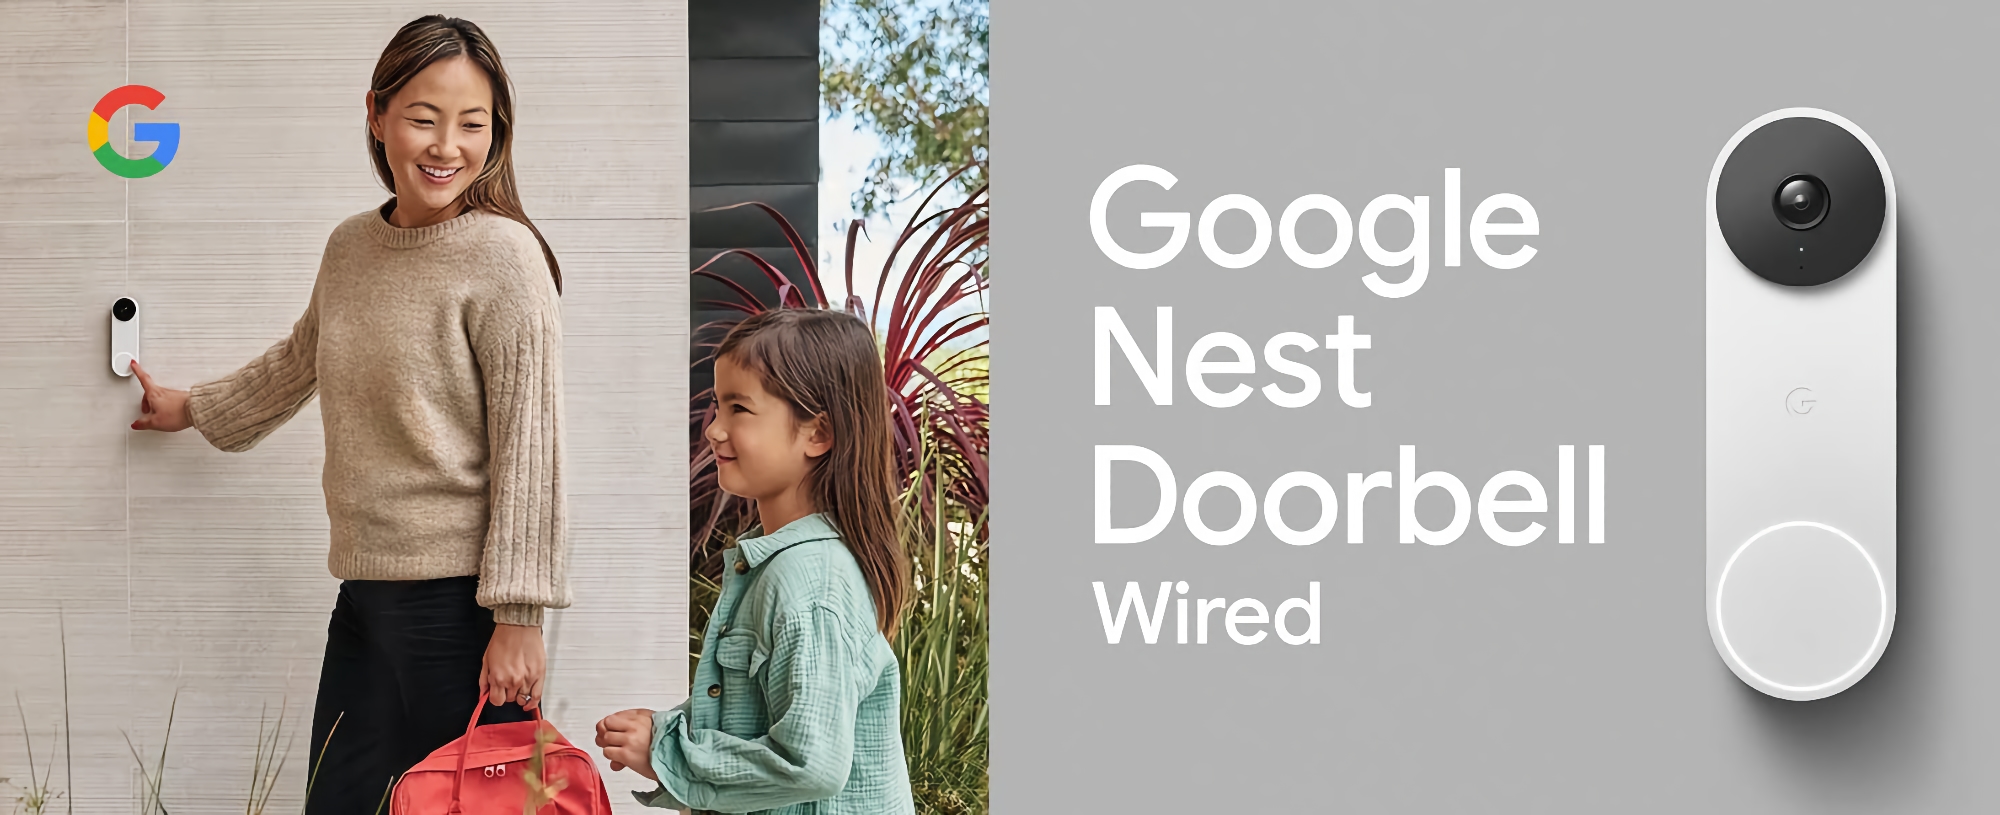 Google presentó la nueva Nest Doorball con cable con HDR y ángulo de visión de 145 grados por 179 dólares